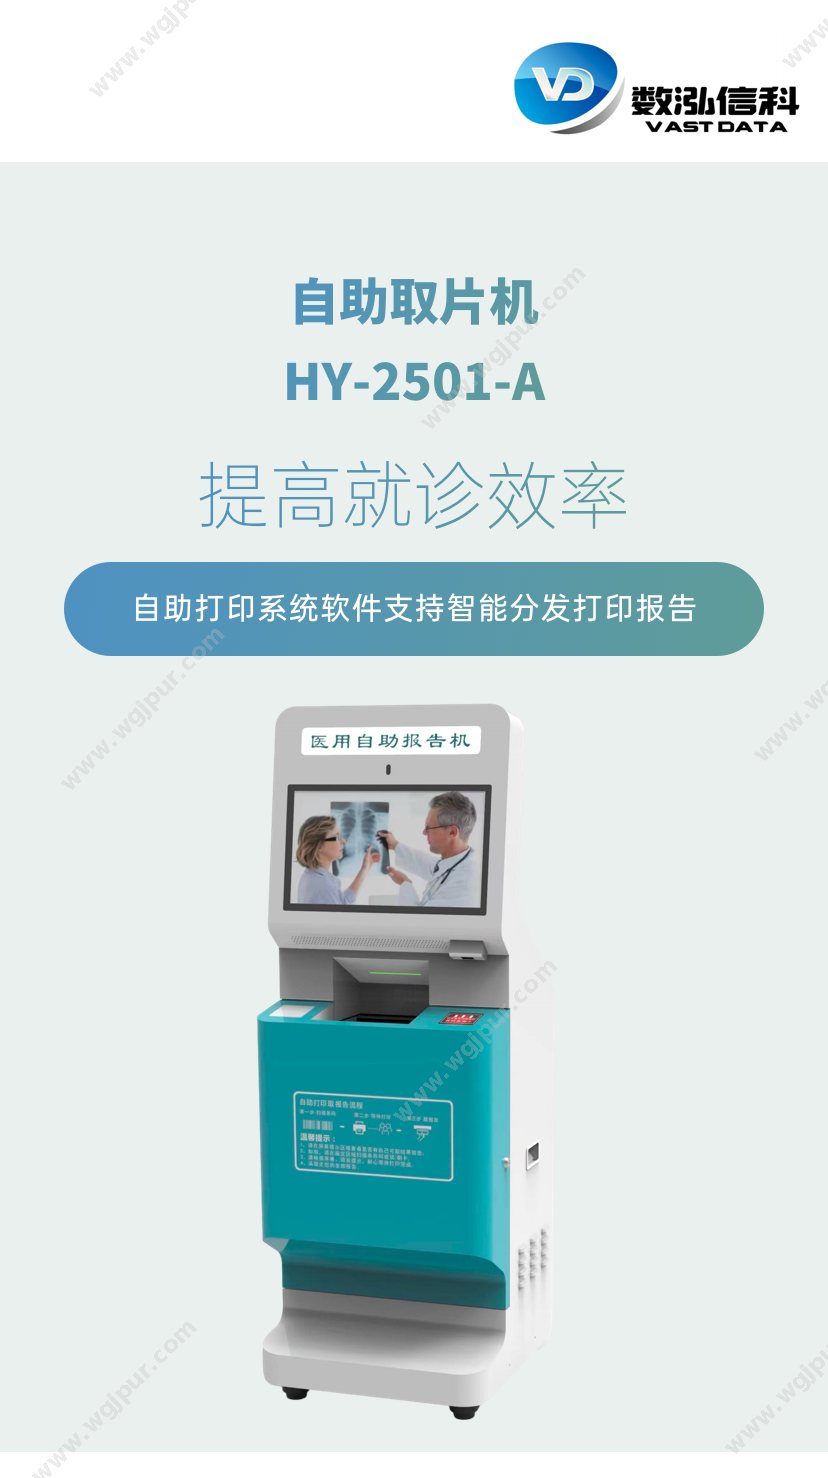 泓越数科 HY-2501-A 体外诊断